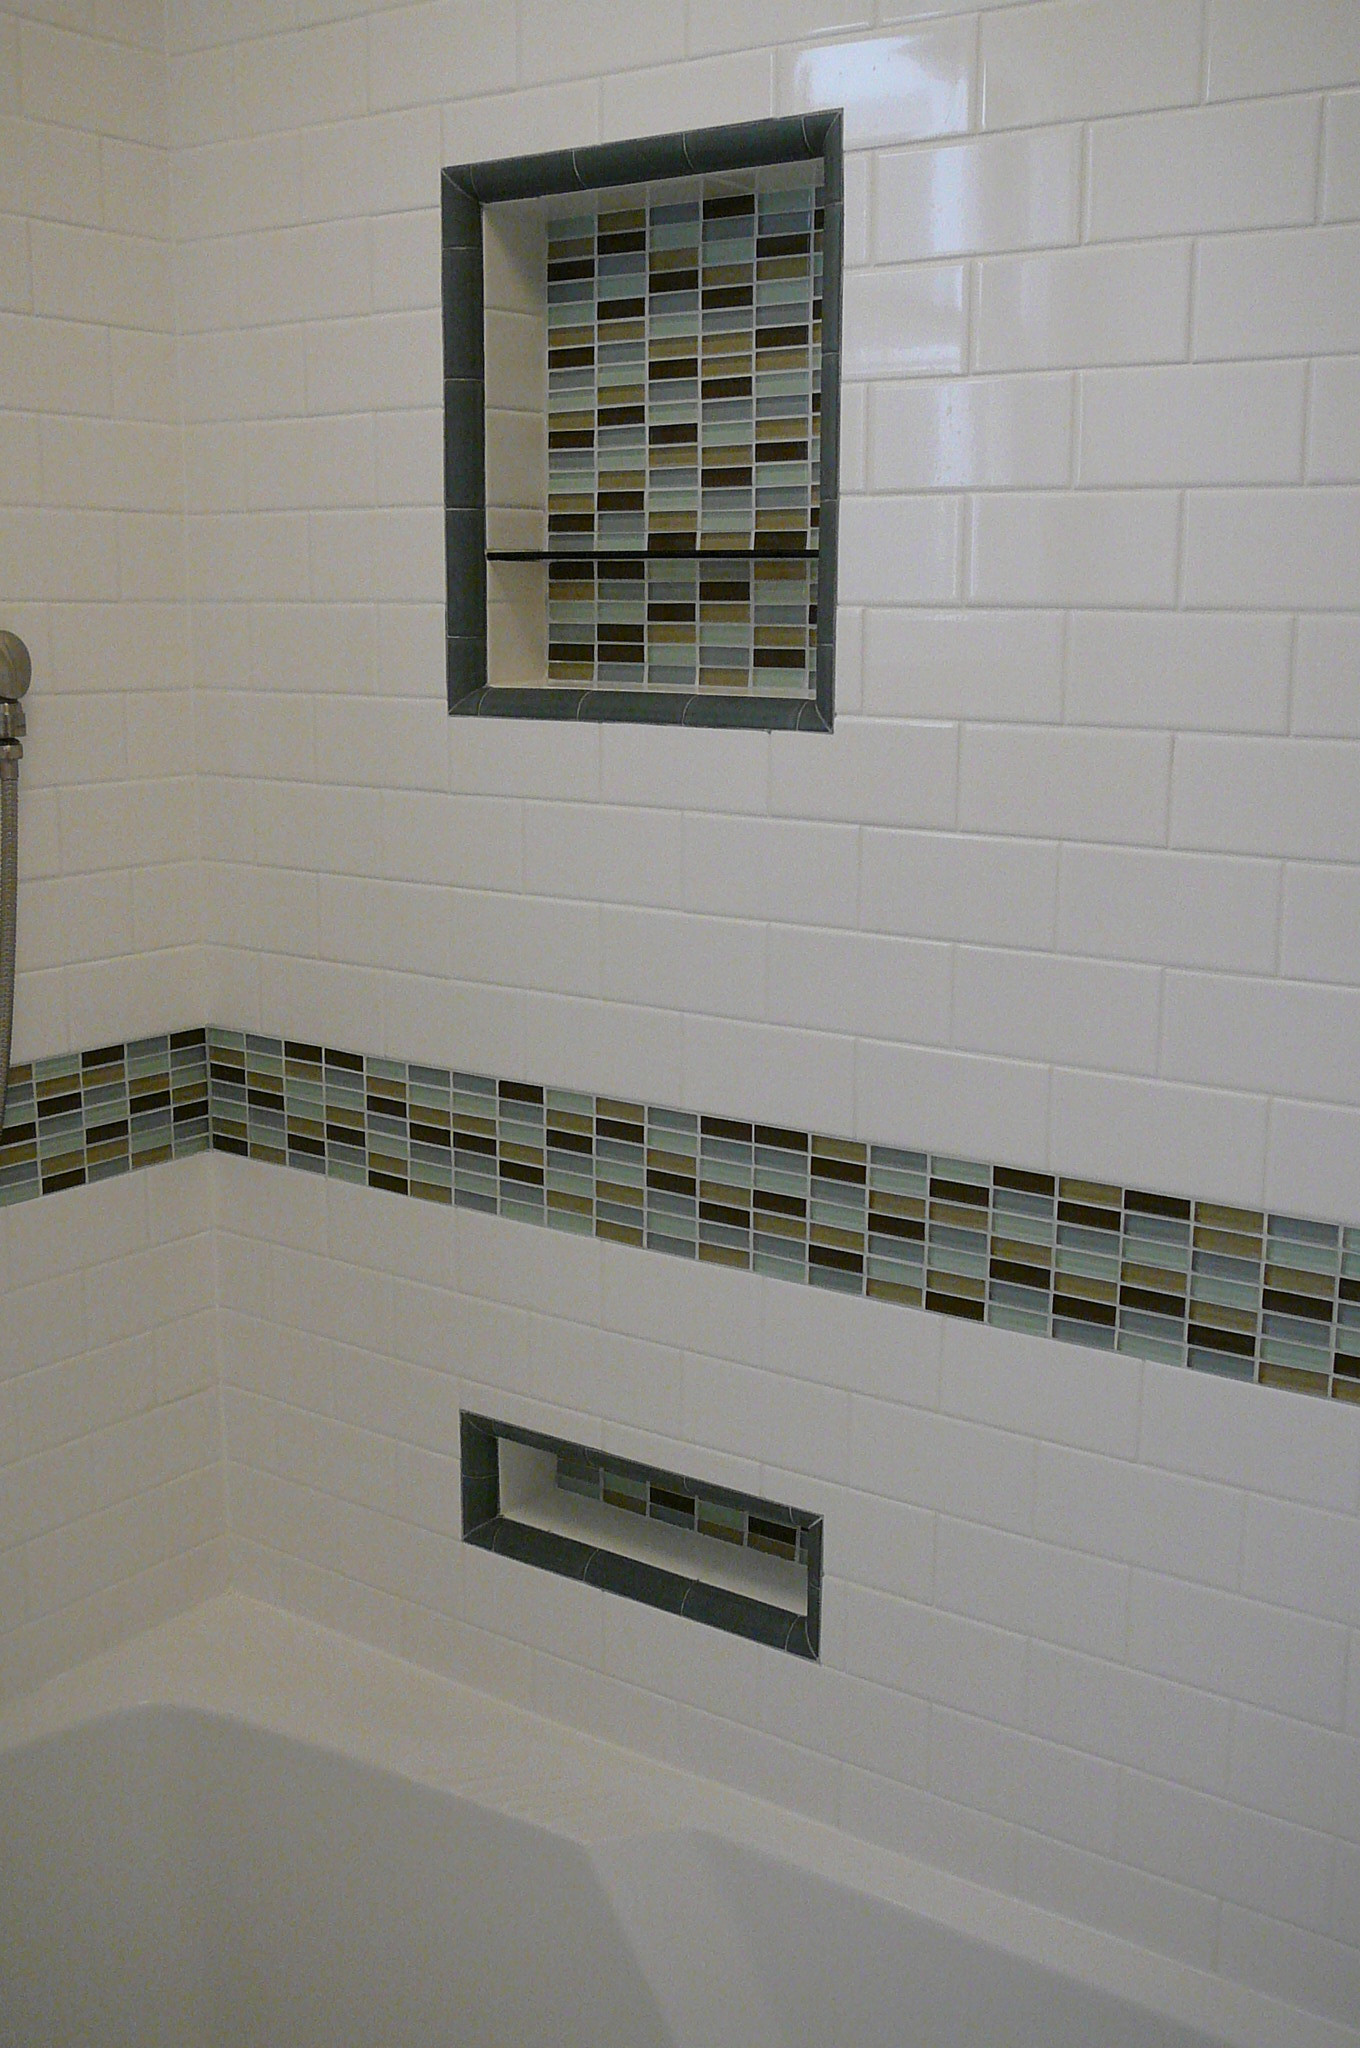 Glass Tile Bathroom Ideas
 30 great ideas of glass tiles for bathroom floors